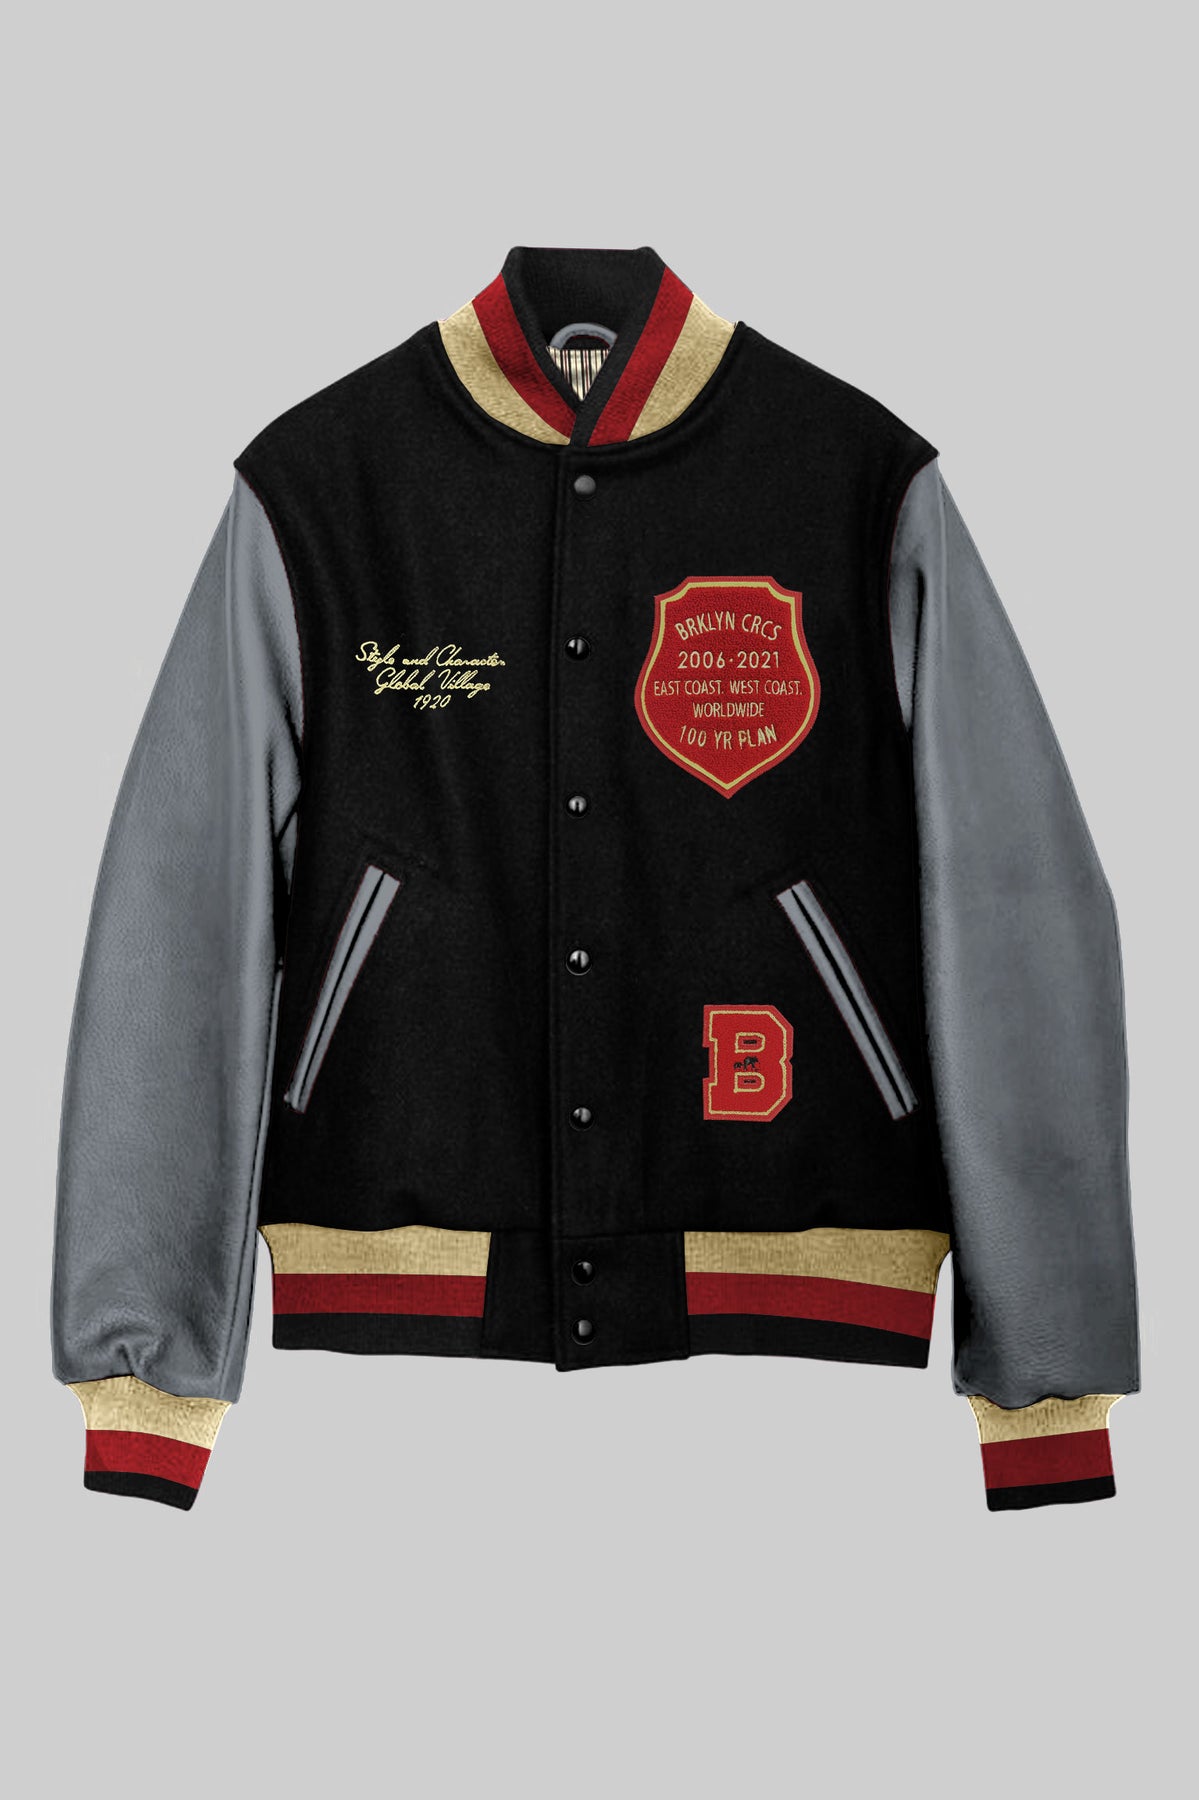 The Jean Grey Varsity Jacket